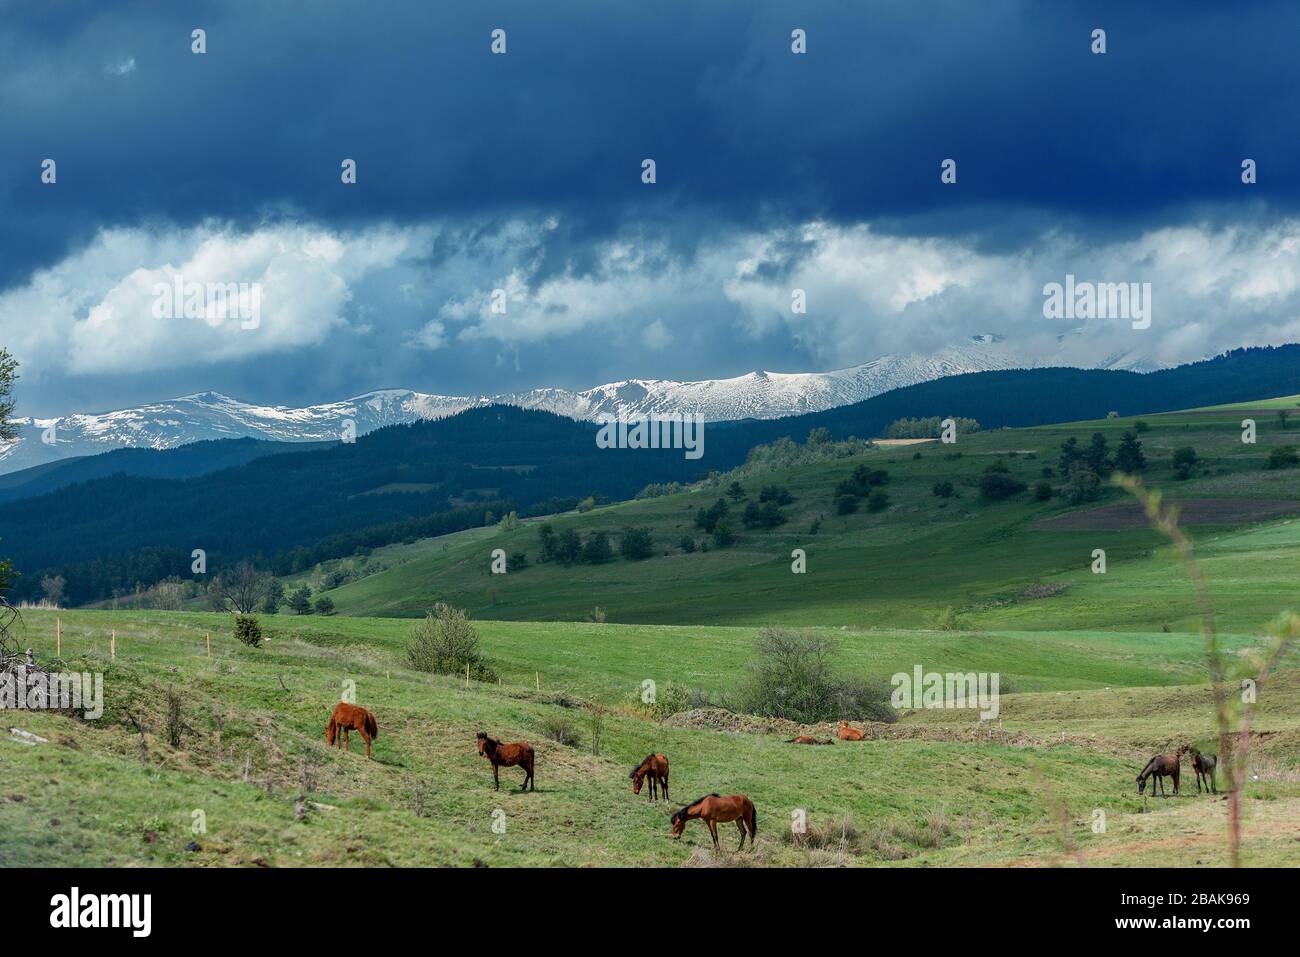 Una mandria di cavalli che pascolano in montagna in estate, splendide colline verdi e blu che rotolano in lontananza, neve visibile nelle cime lontane. Foto Stock